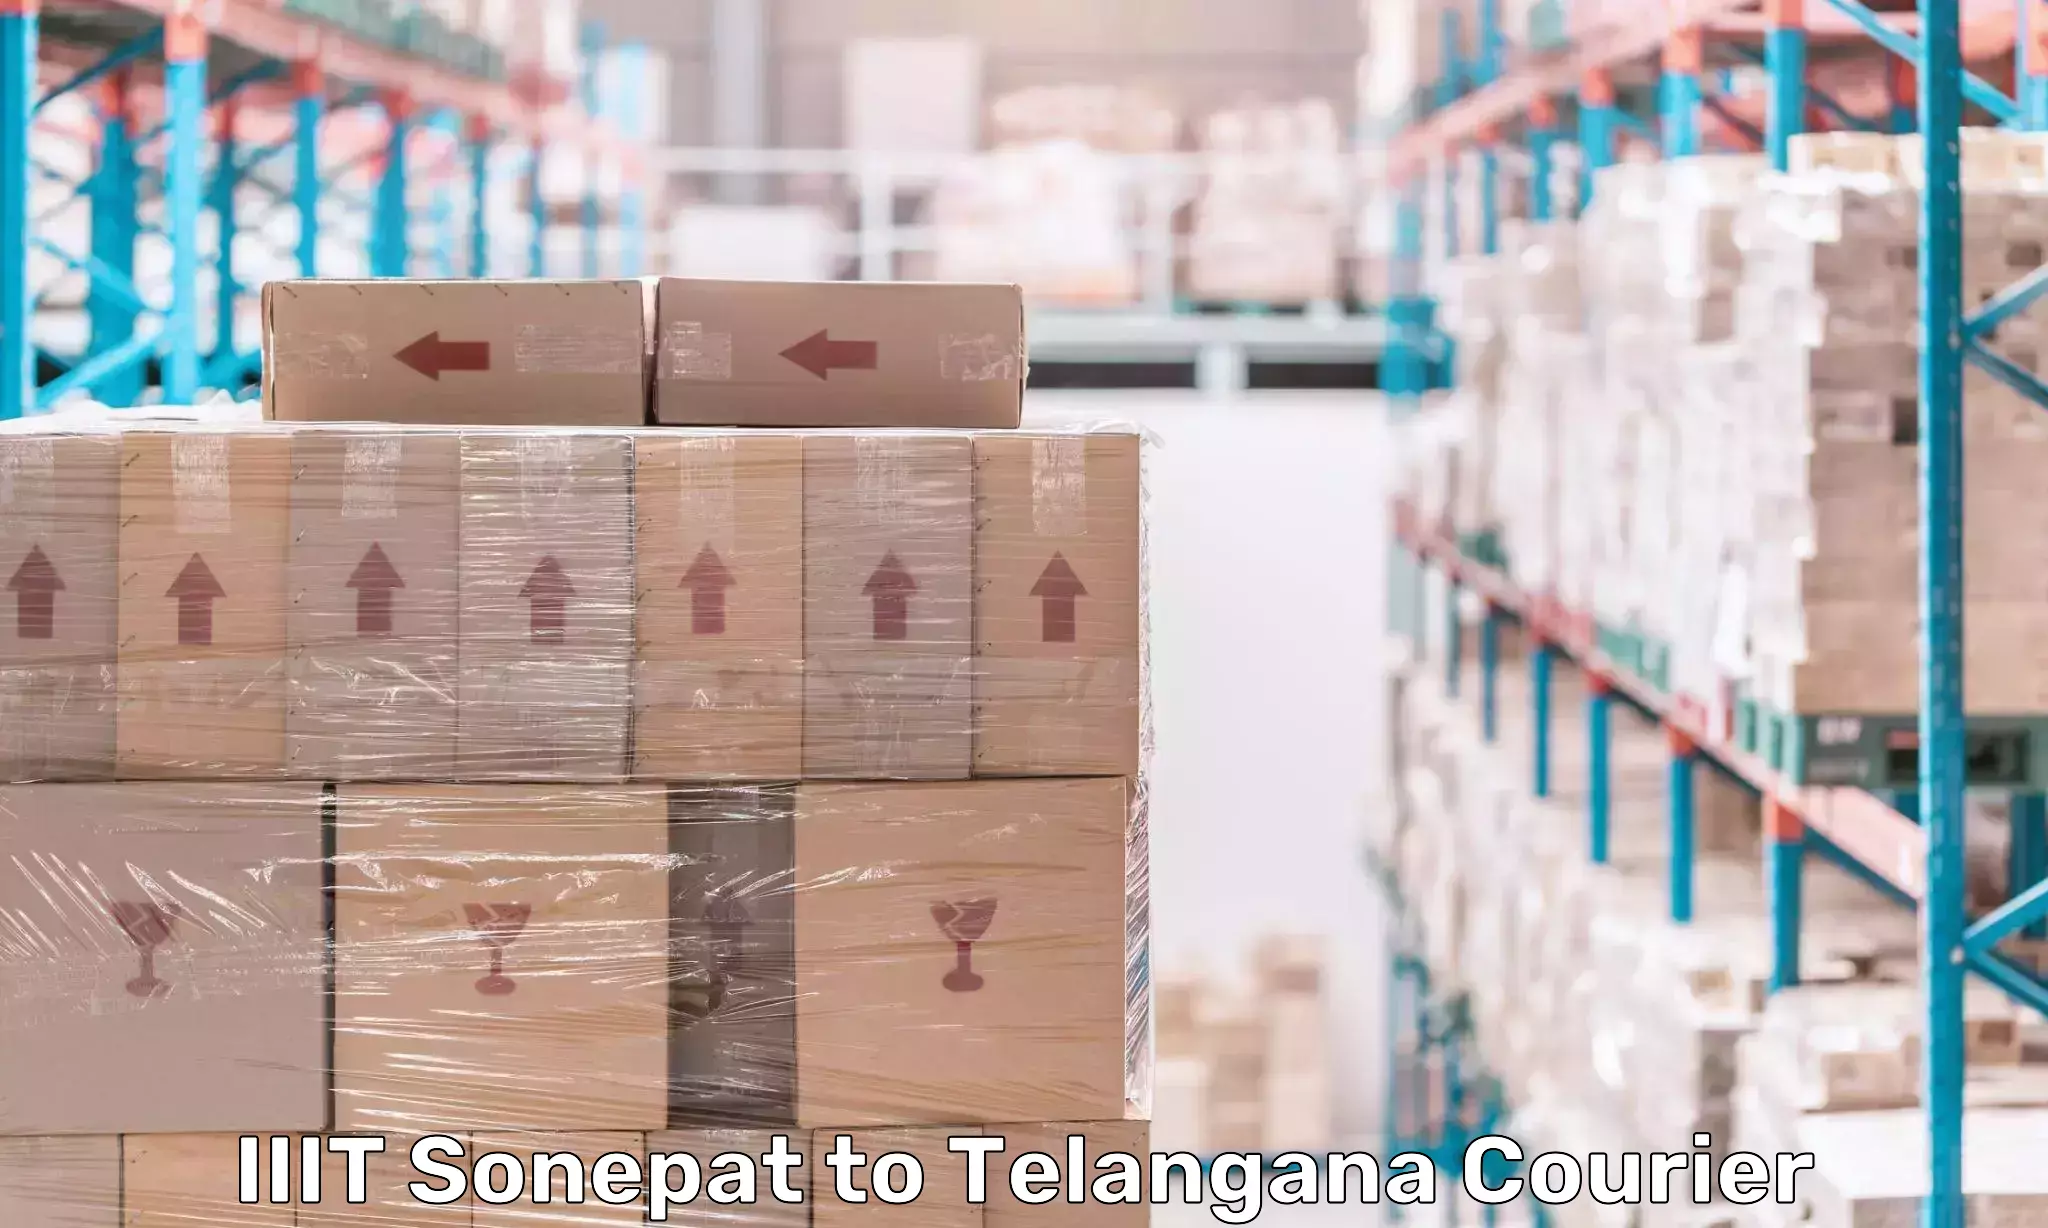 Quick dispatch service IIIT Sonepat to Telangana